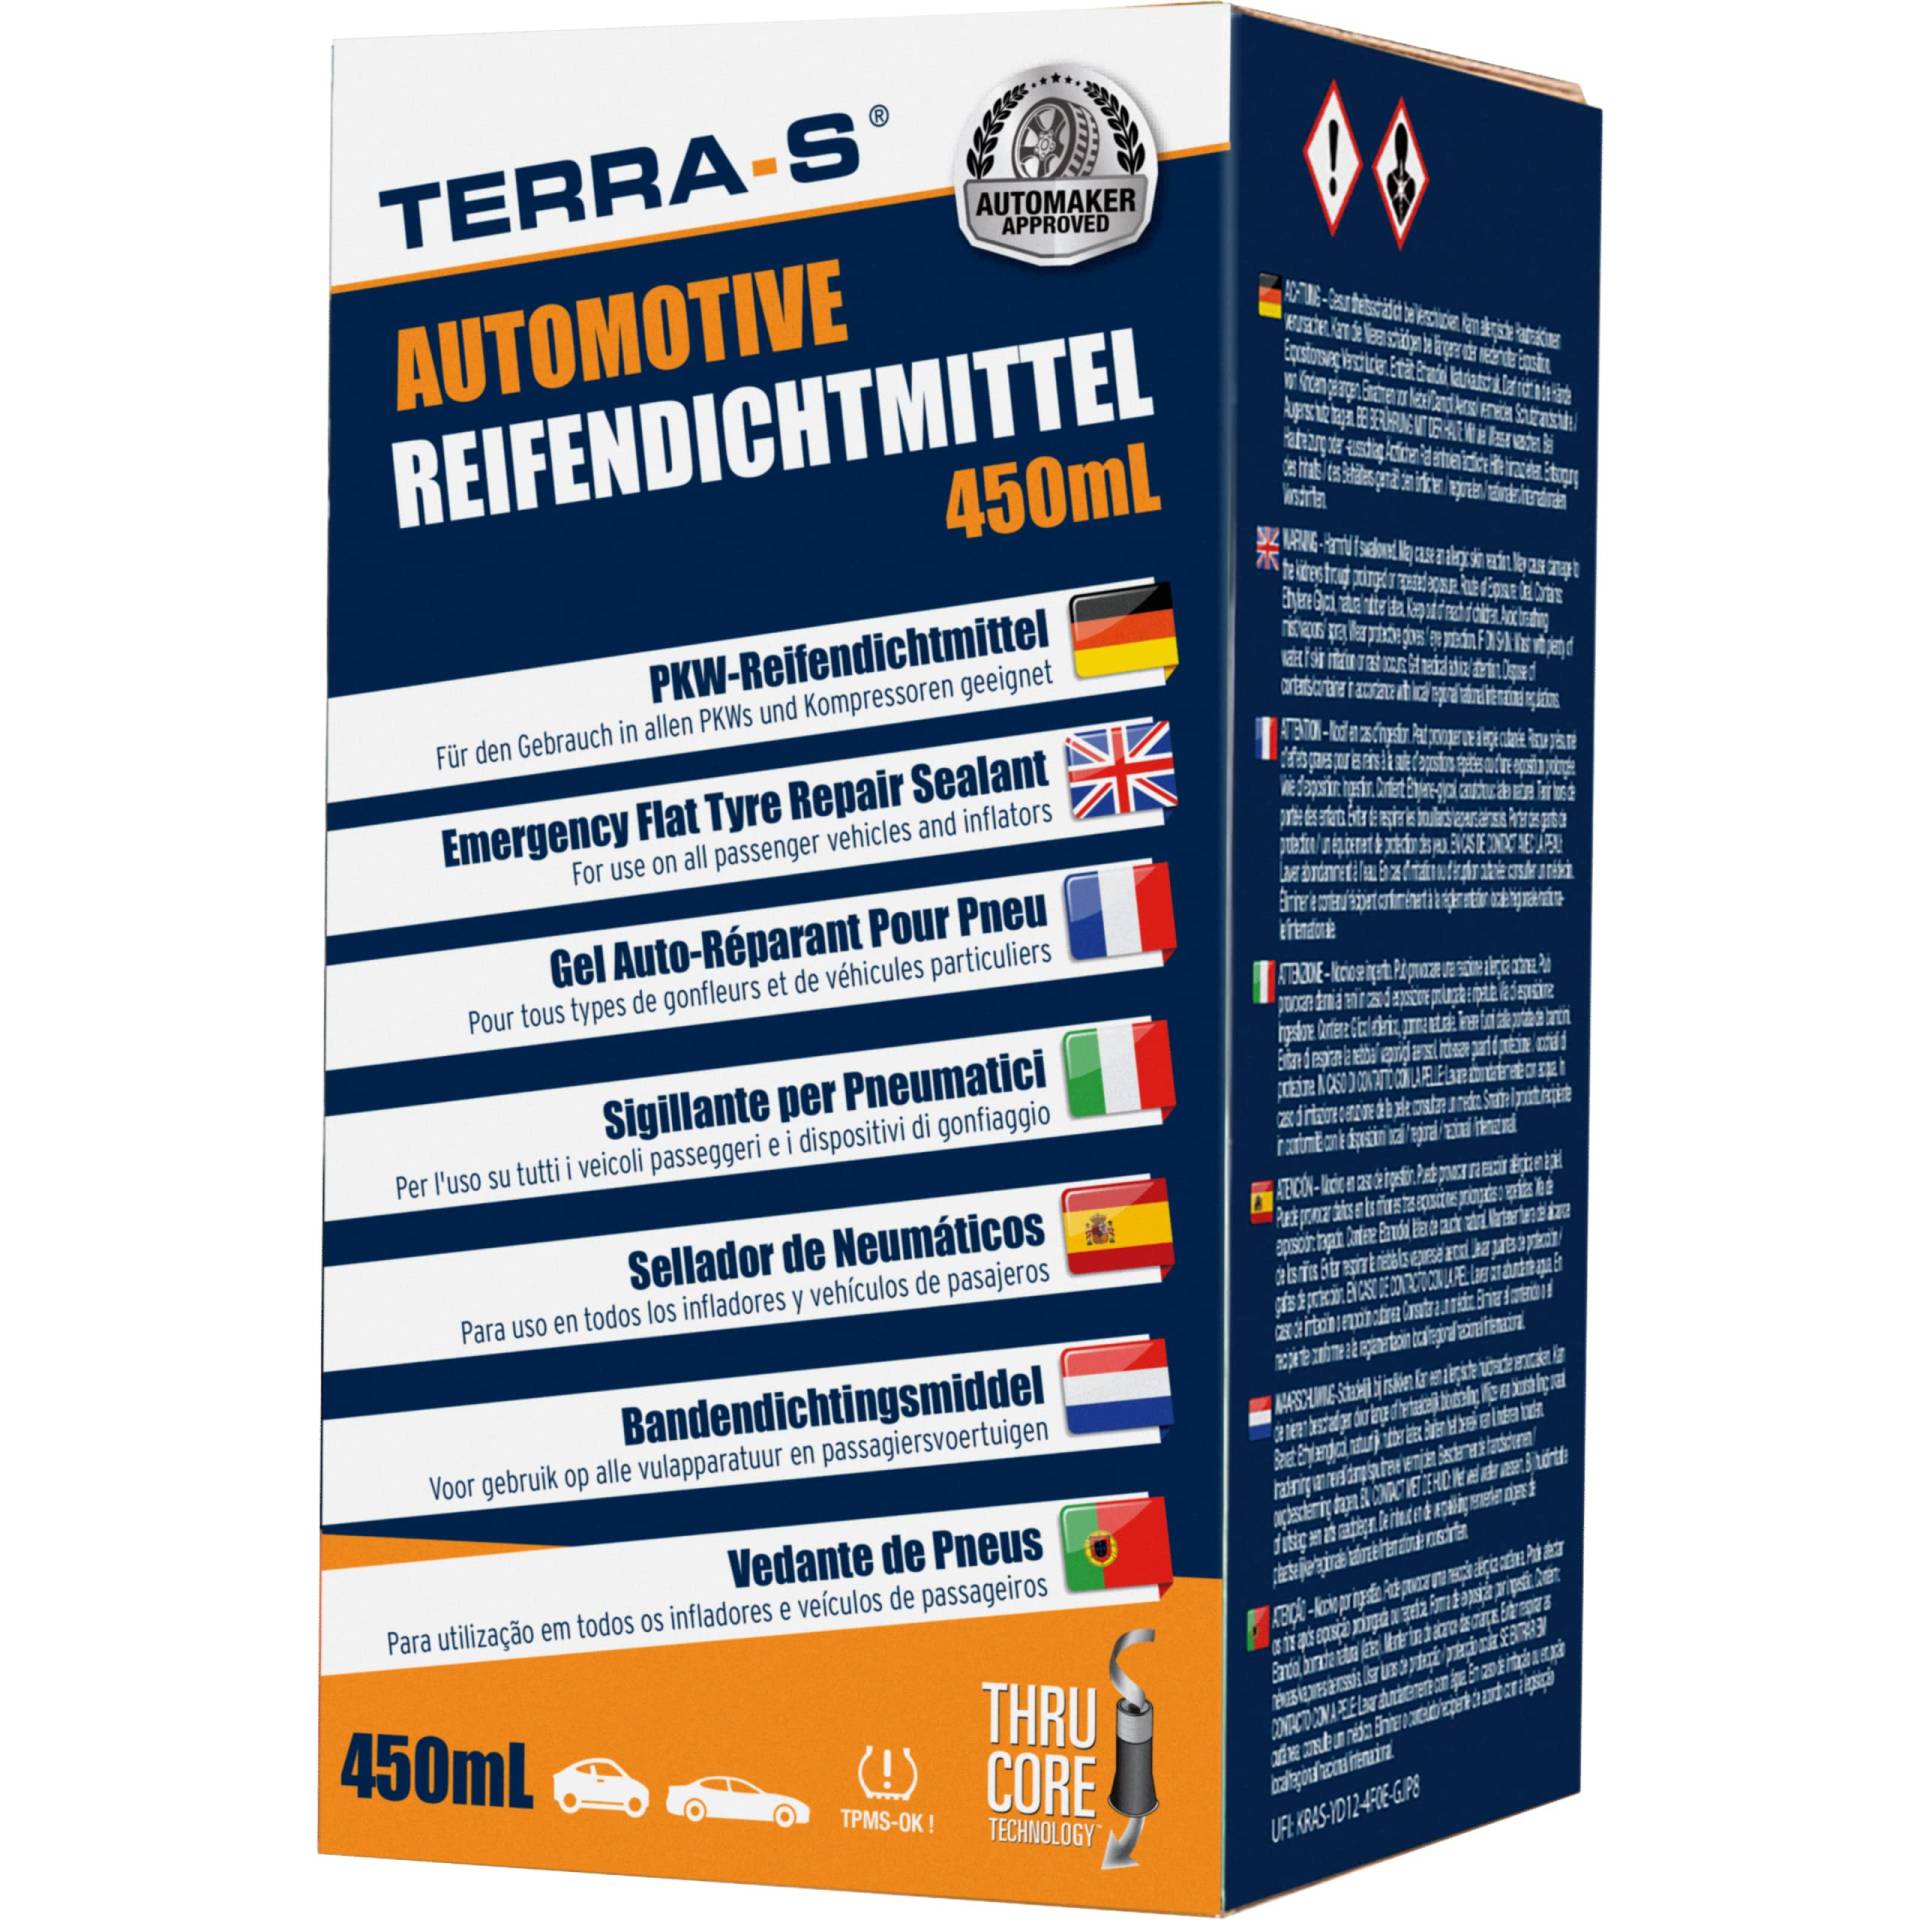 TERRA-S T16003 450mL Universal-Reifendichtmittel-Nachfüllflasche mit automatischem Einfüllen des Dichtmittels, die mit Allen Reifenpannen-Kits oder Kompressoren funktioniert. von TERRA-S